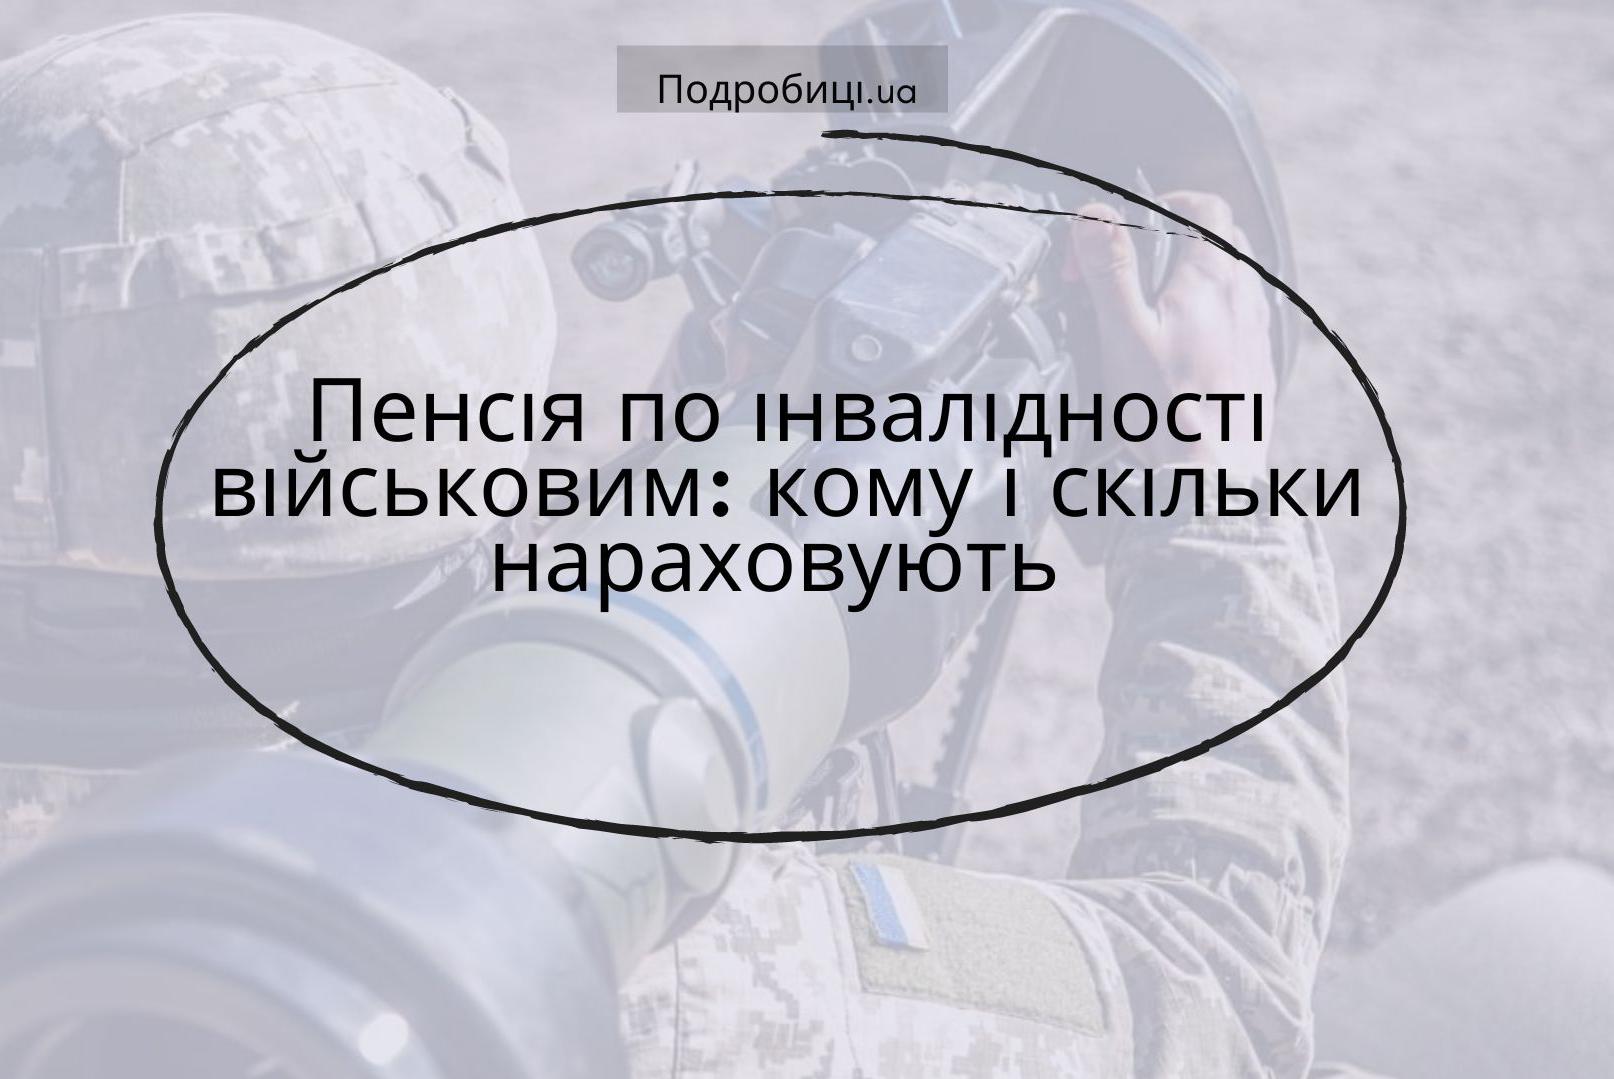 У Пенсійному фонді України розповіли, як військові можуть отримати пенсію по інвалідності